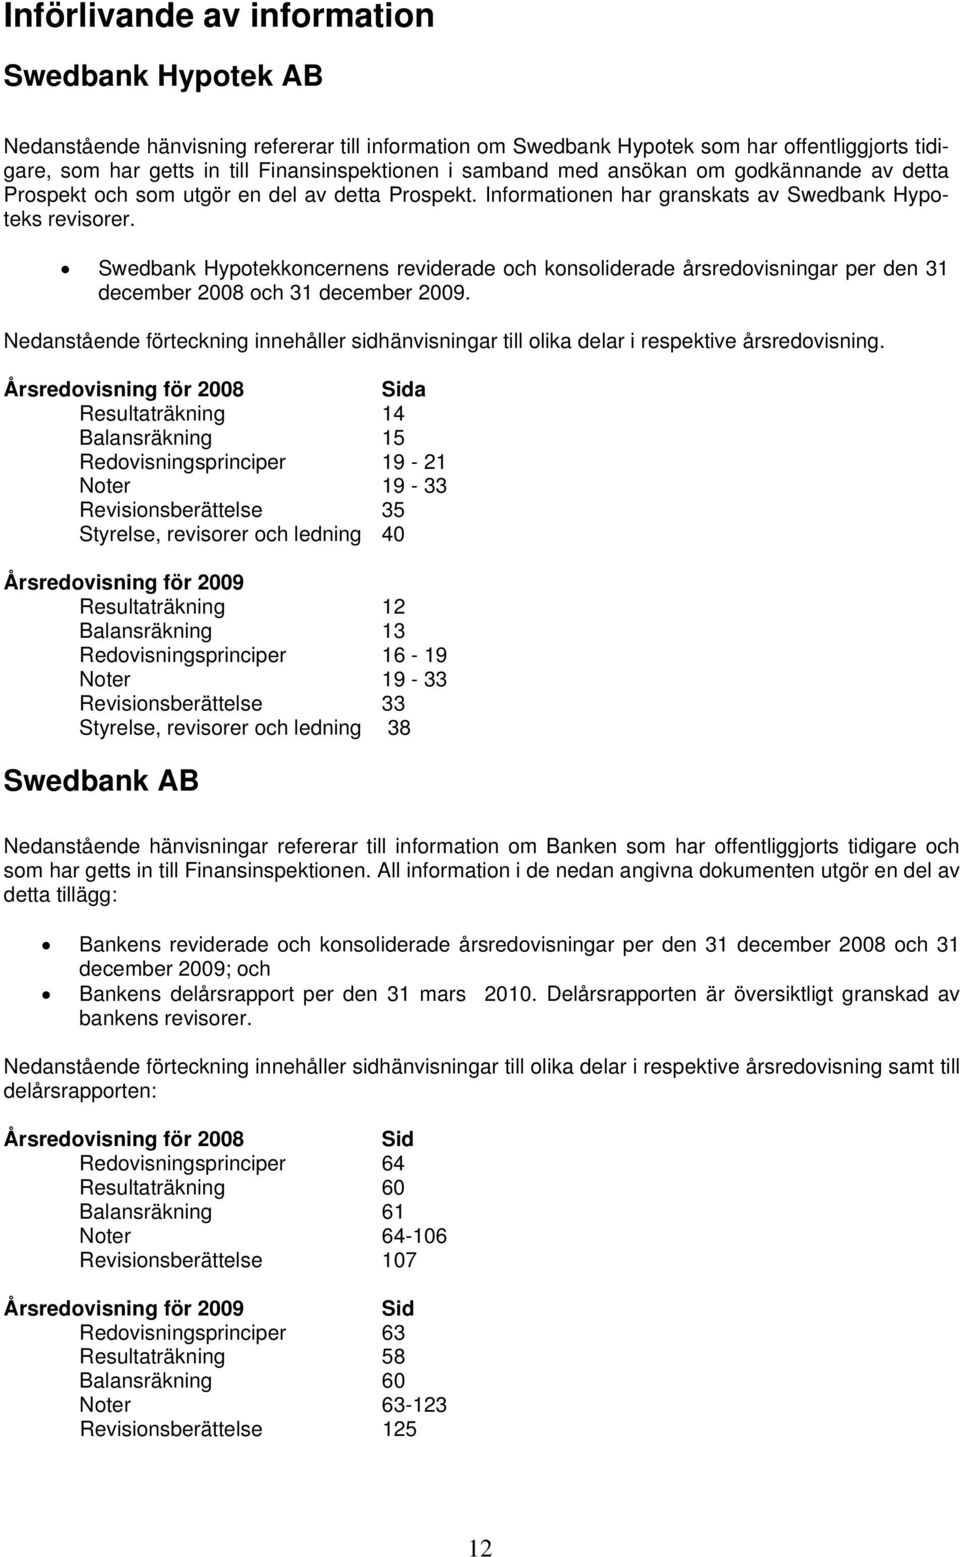 Swedbank Hypotekkoncernens reviderade och konsoliderade årsredovisningar per den 31 december 2008 och 31 december 2009.